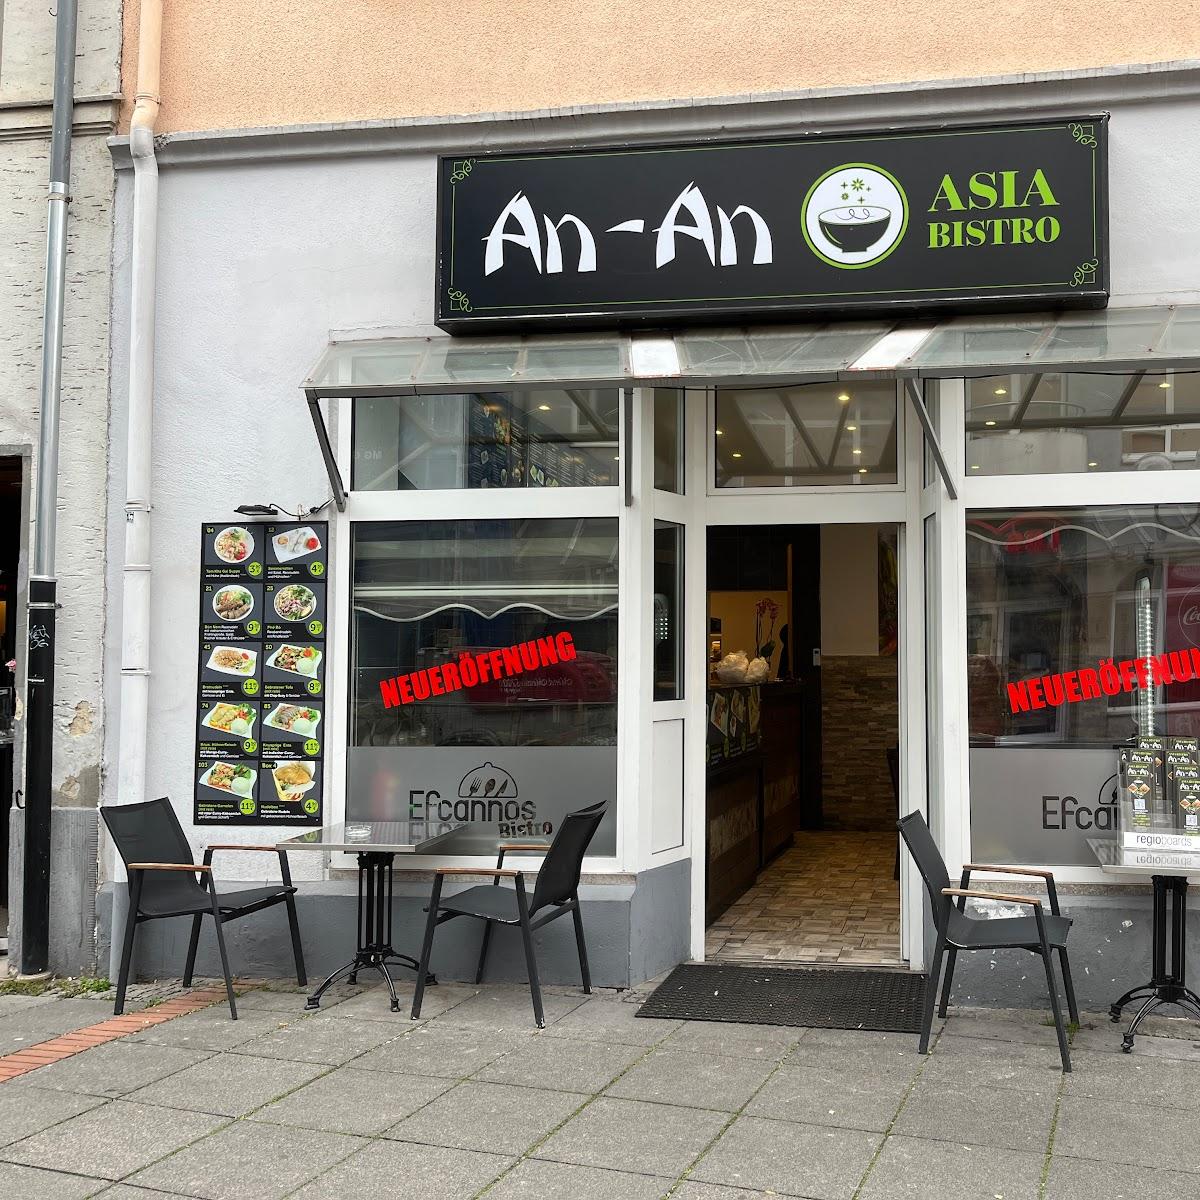 Restaurant "An-An Asia Bistro" in Peine